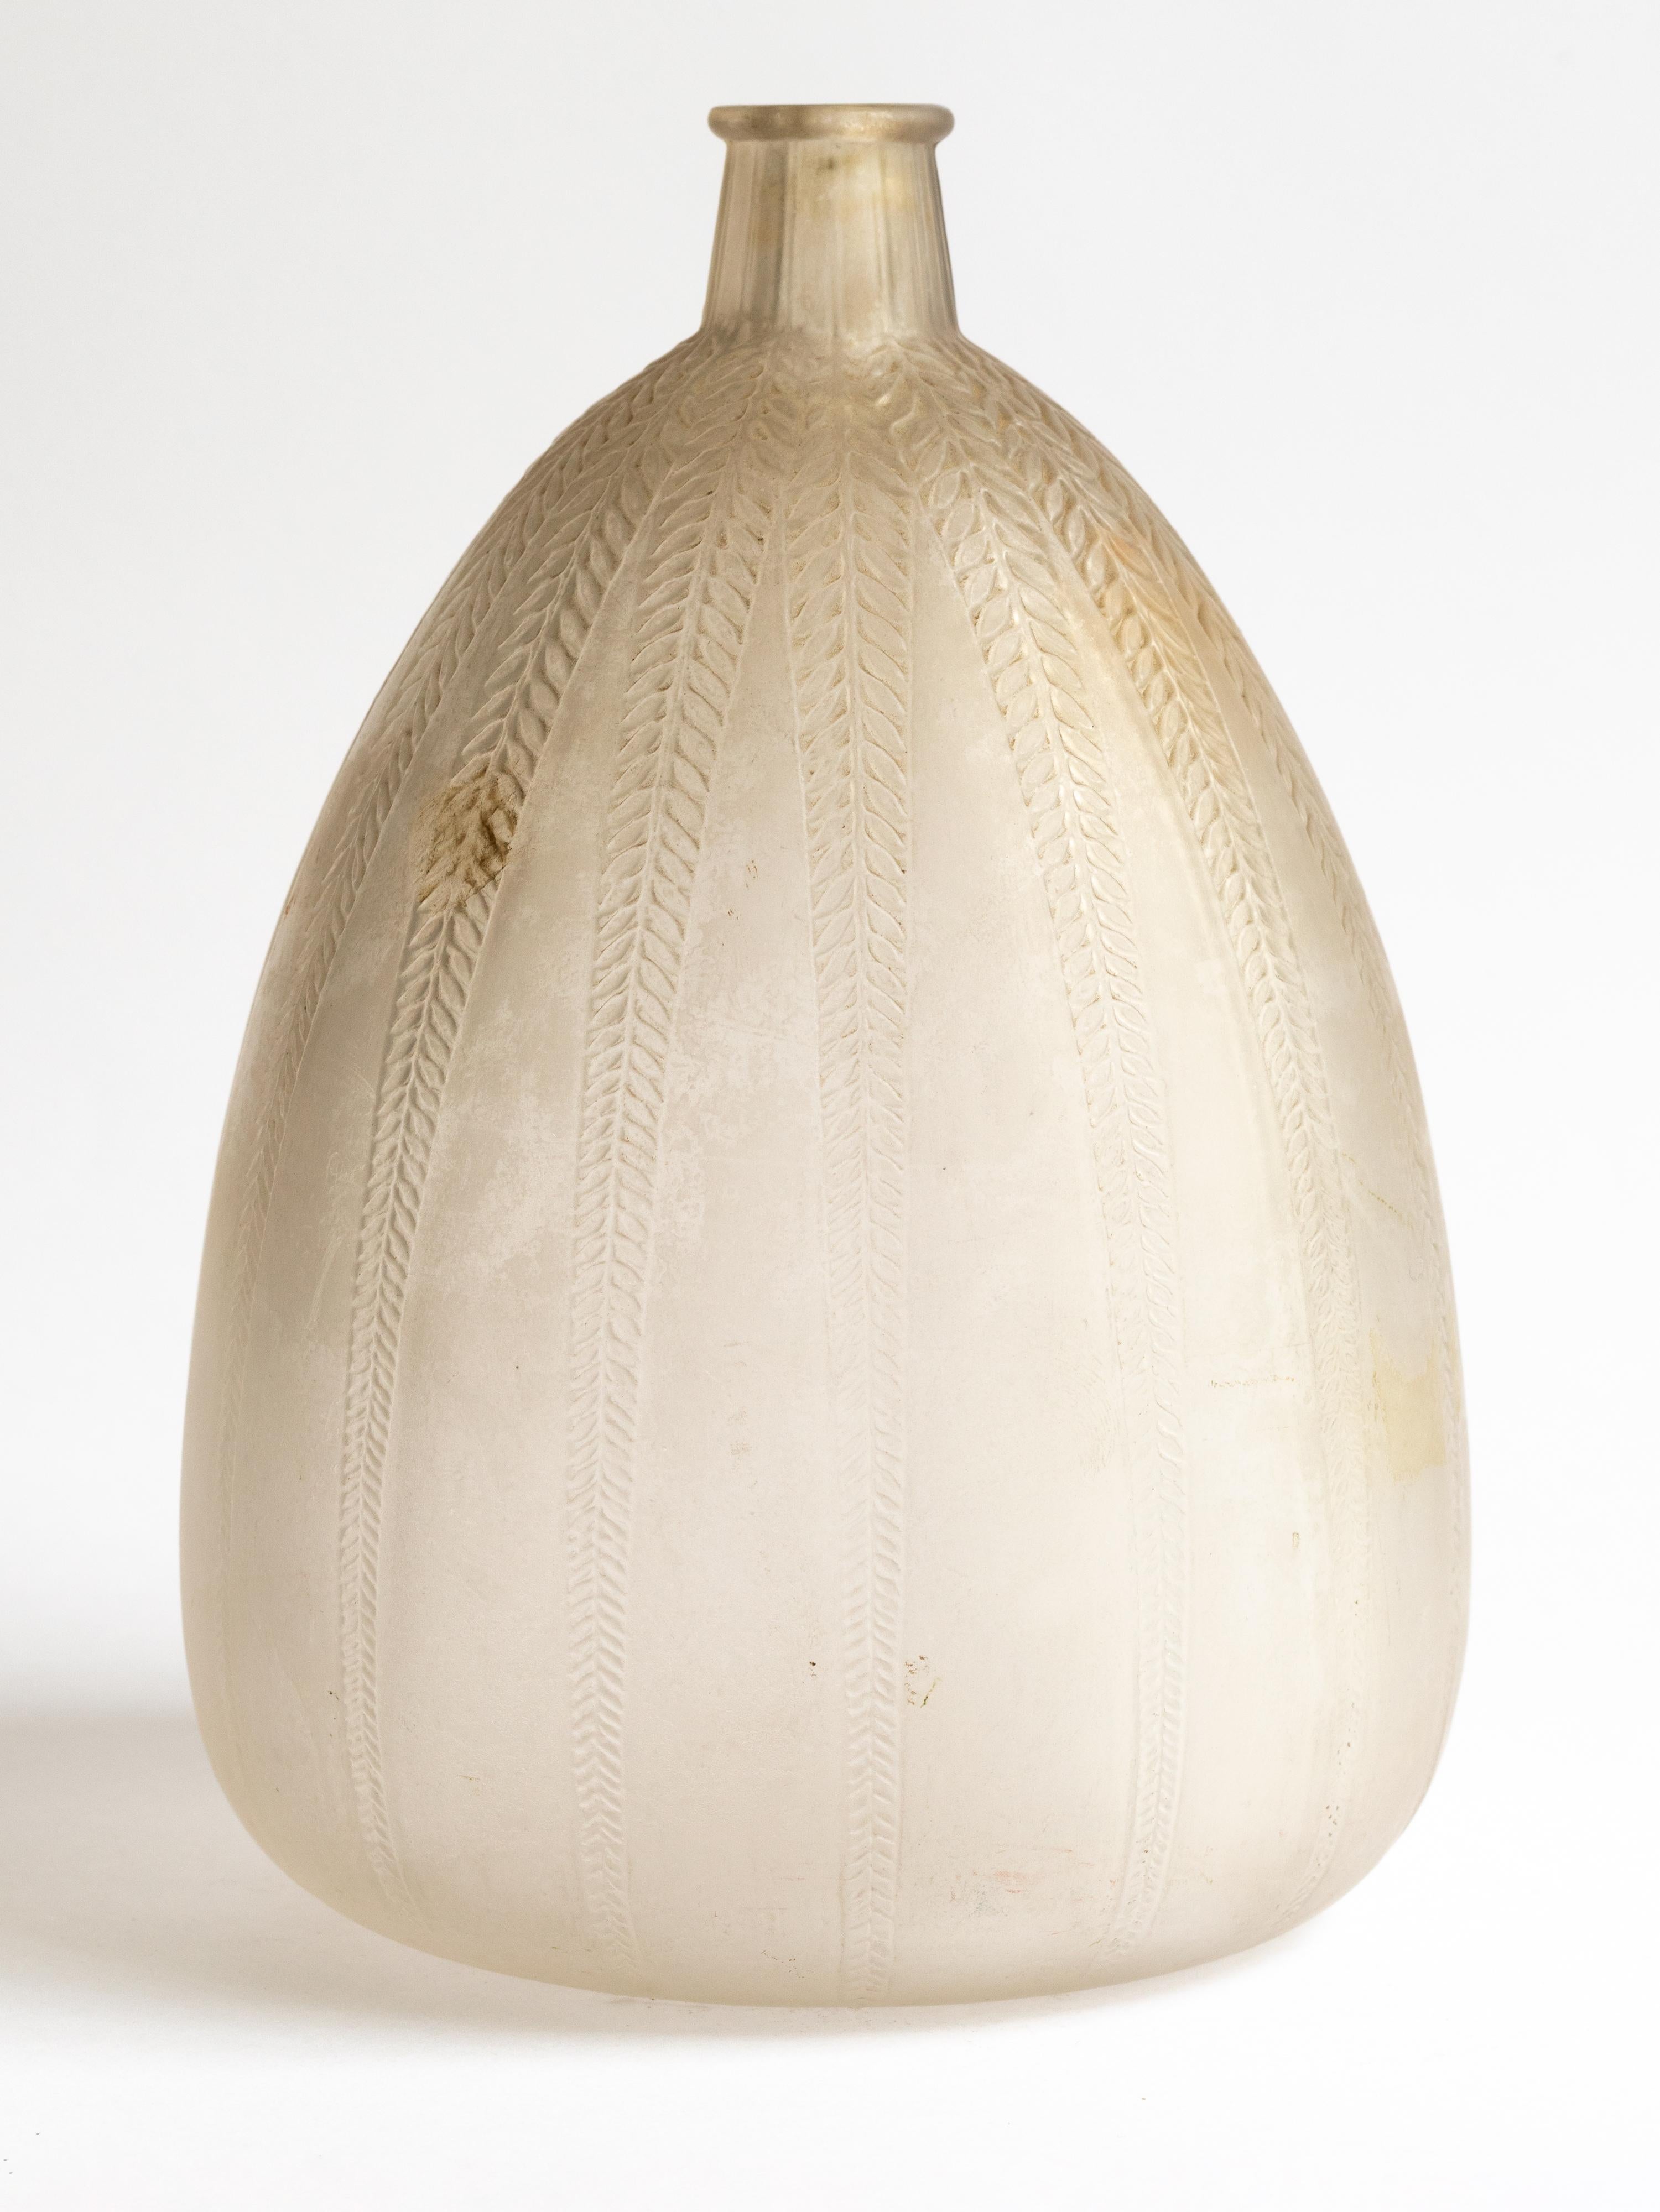 René Lalique, dreieckige Form, umlaufendes, nach unten gerichtetes, vertikal angeordnetes, sich wiederholendes Blattmotiv aus mattiertem und patiniertem Glas.
Vase unter einem kurzen und schmalen Hals. 

Geformte Marke R.Lalique.

Bibliographie: